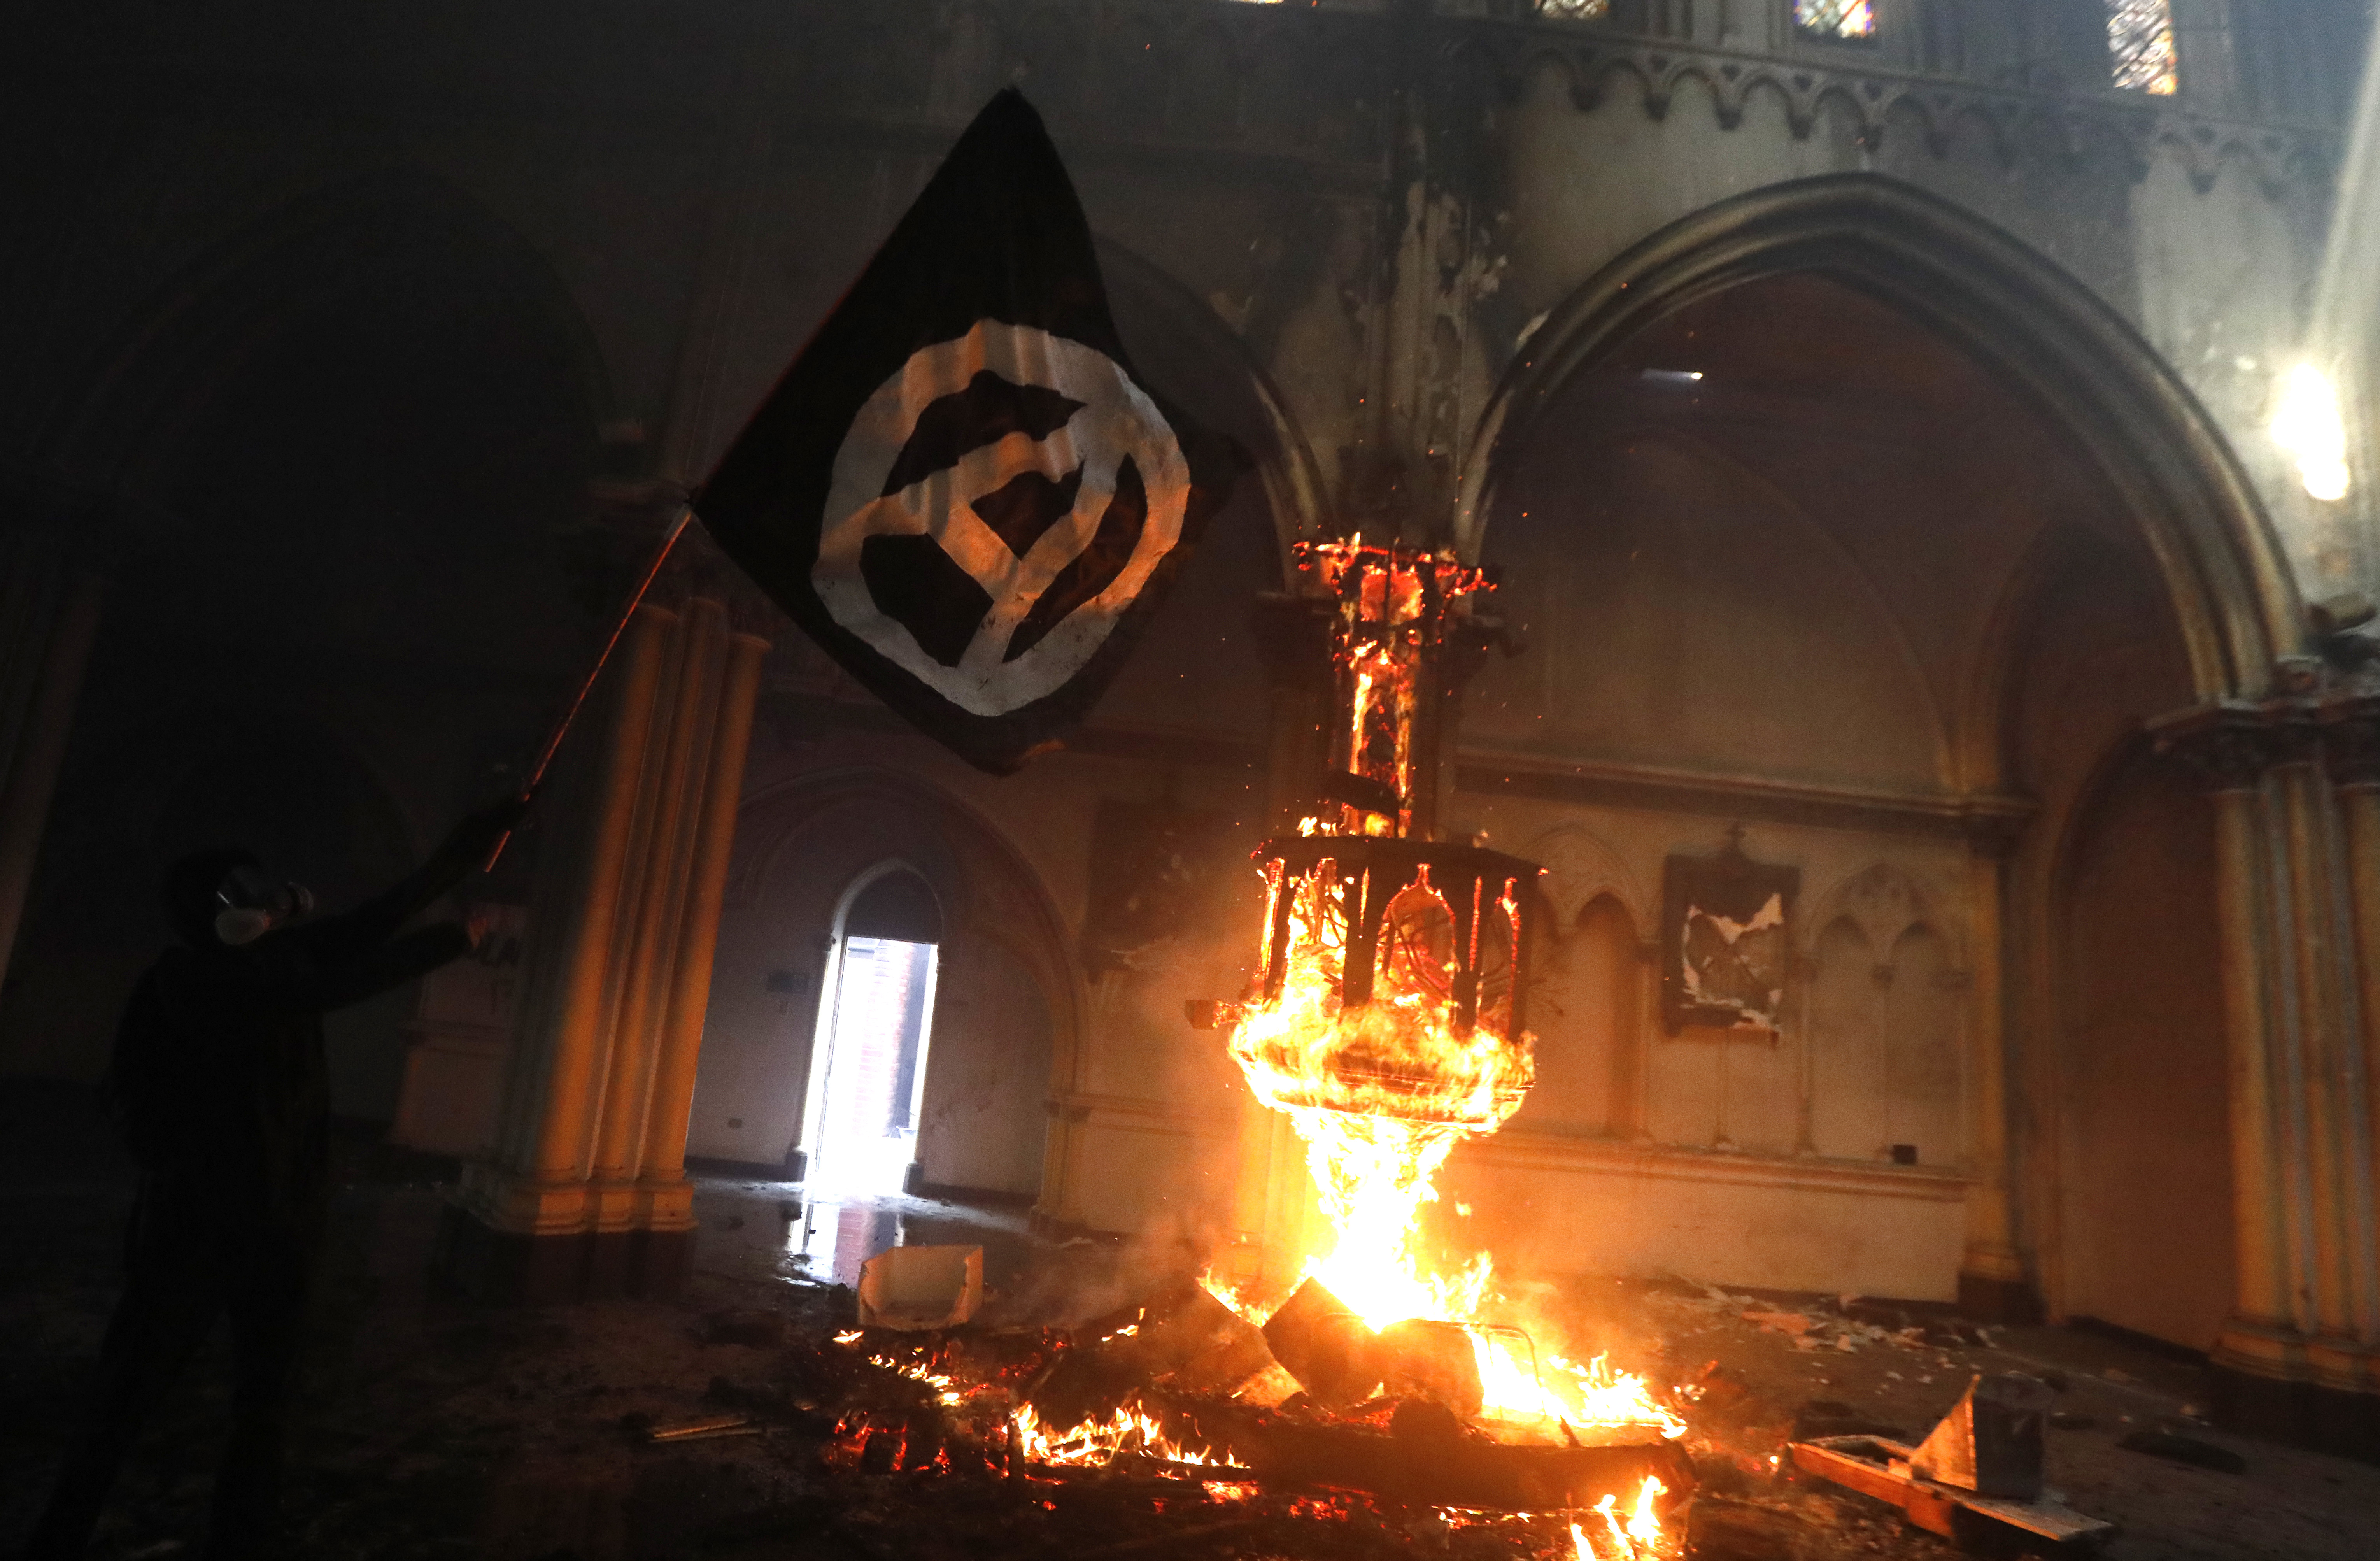 Inicia juicio contra imputado por quemar la Iglesia de Carabineros